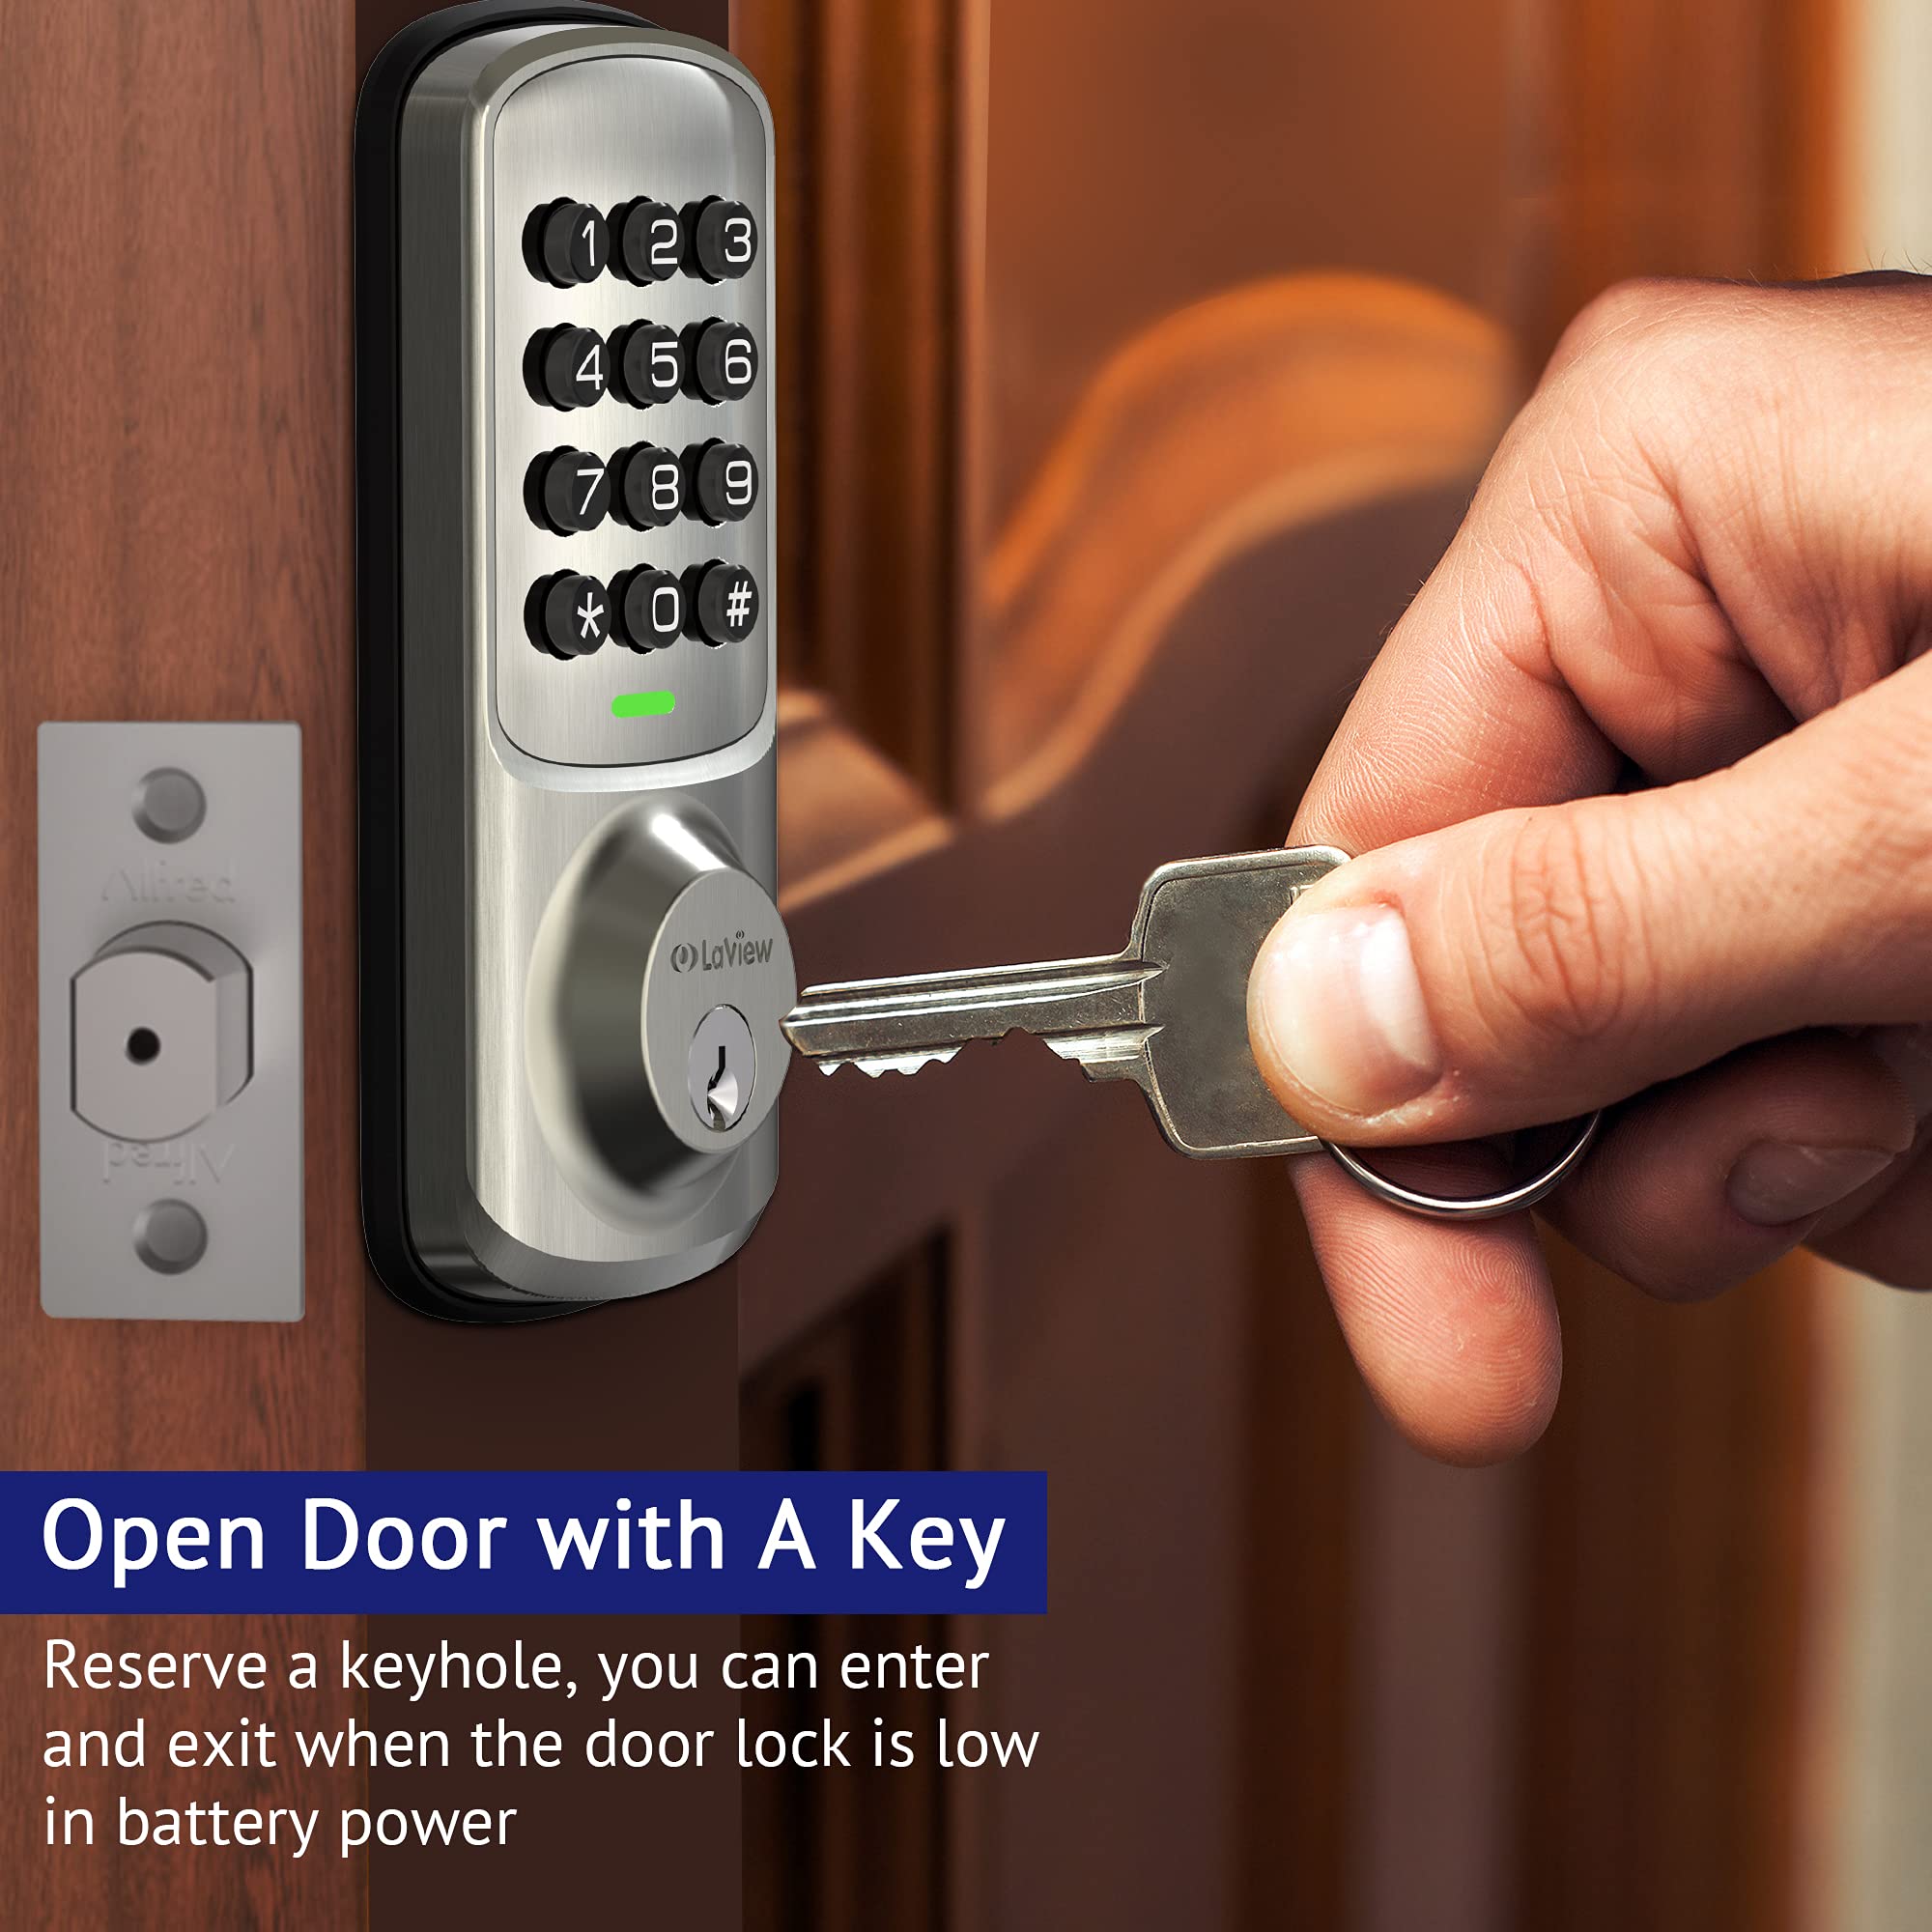 LaView Door Lock with Keypad, Keyless Entry Door Lock, Electronic Deadbolt Lock for Front Door, Bedroom Door, Garage Door, Auto Lock,1-Touch Motorized Locking, 20 User Codes, Easy to Install